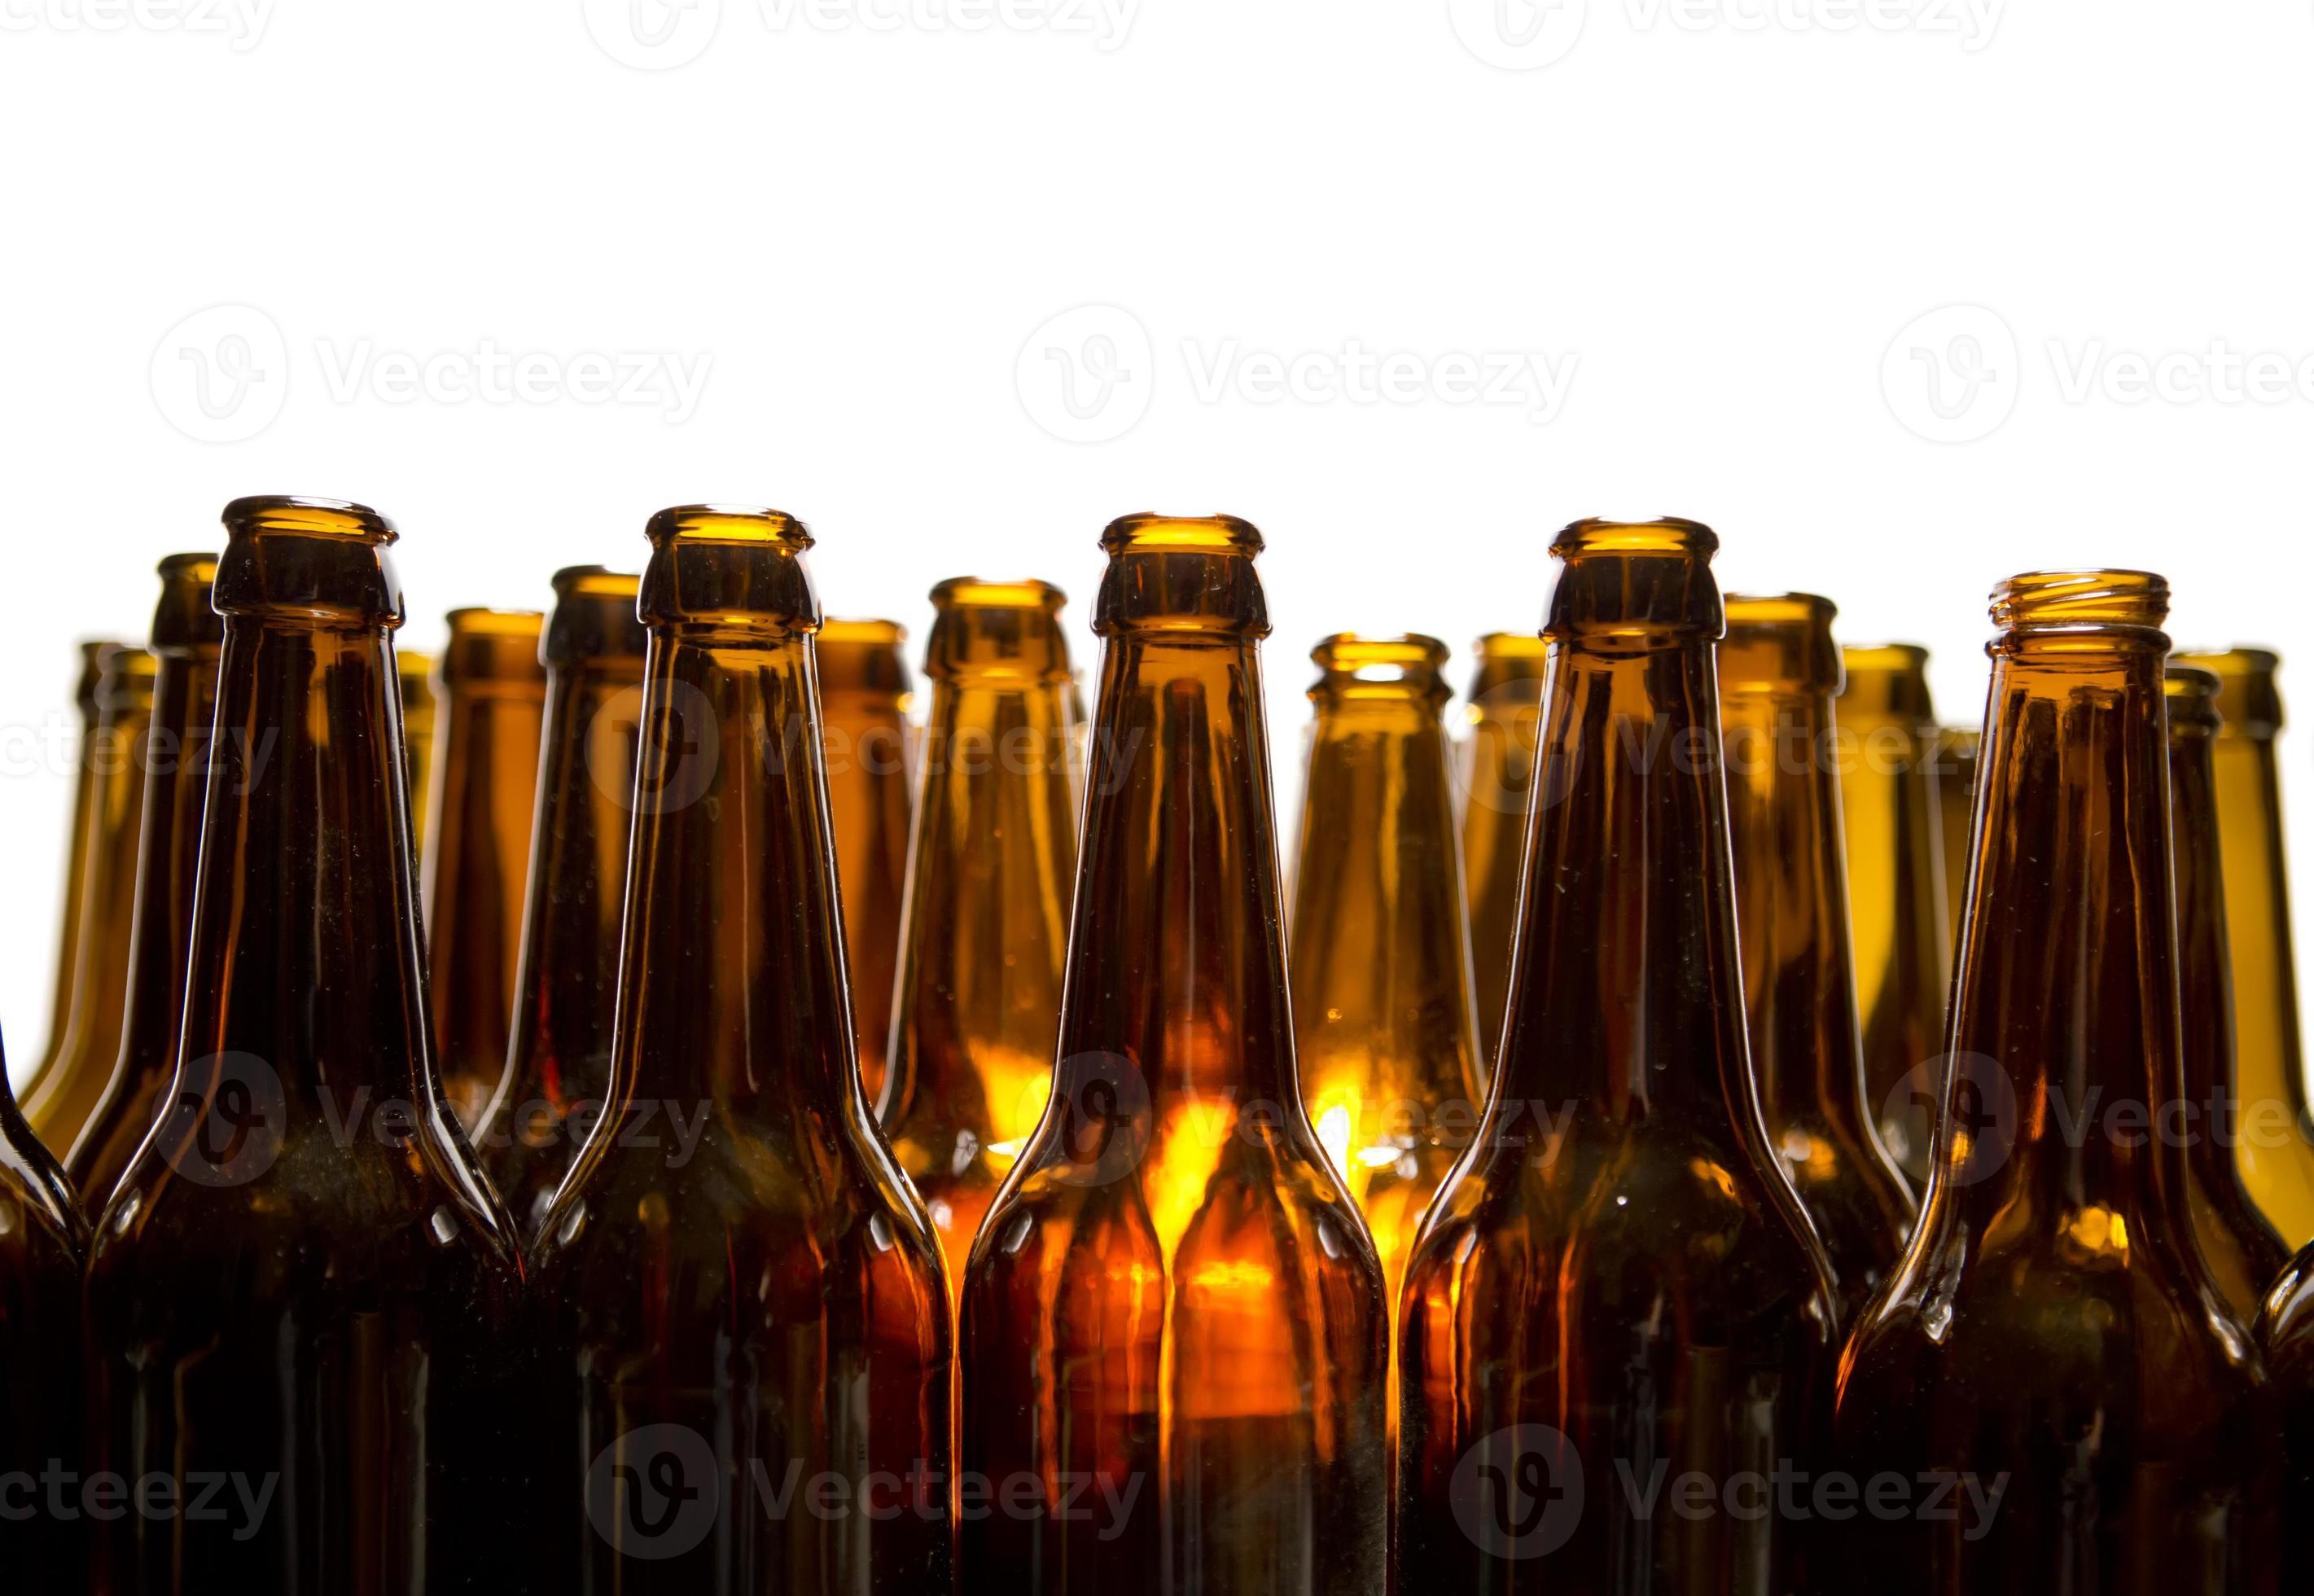 Gloed harpoen Suradam lege glazen bierflesjes 943323 Stockfoto